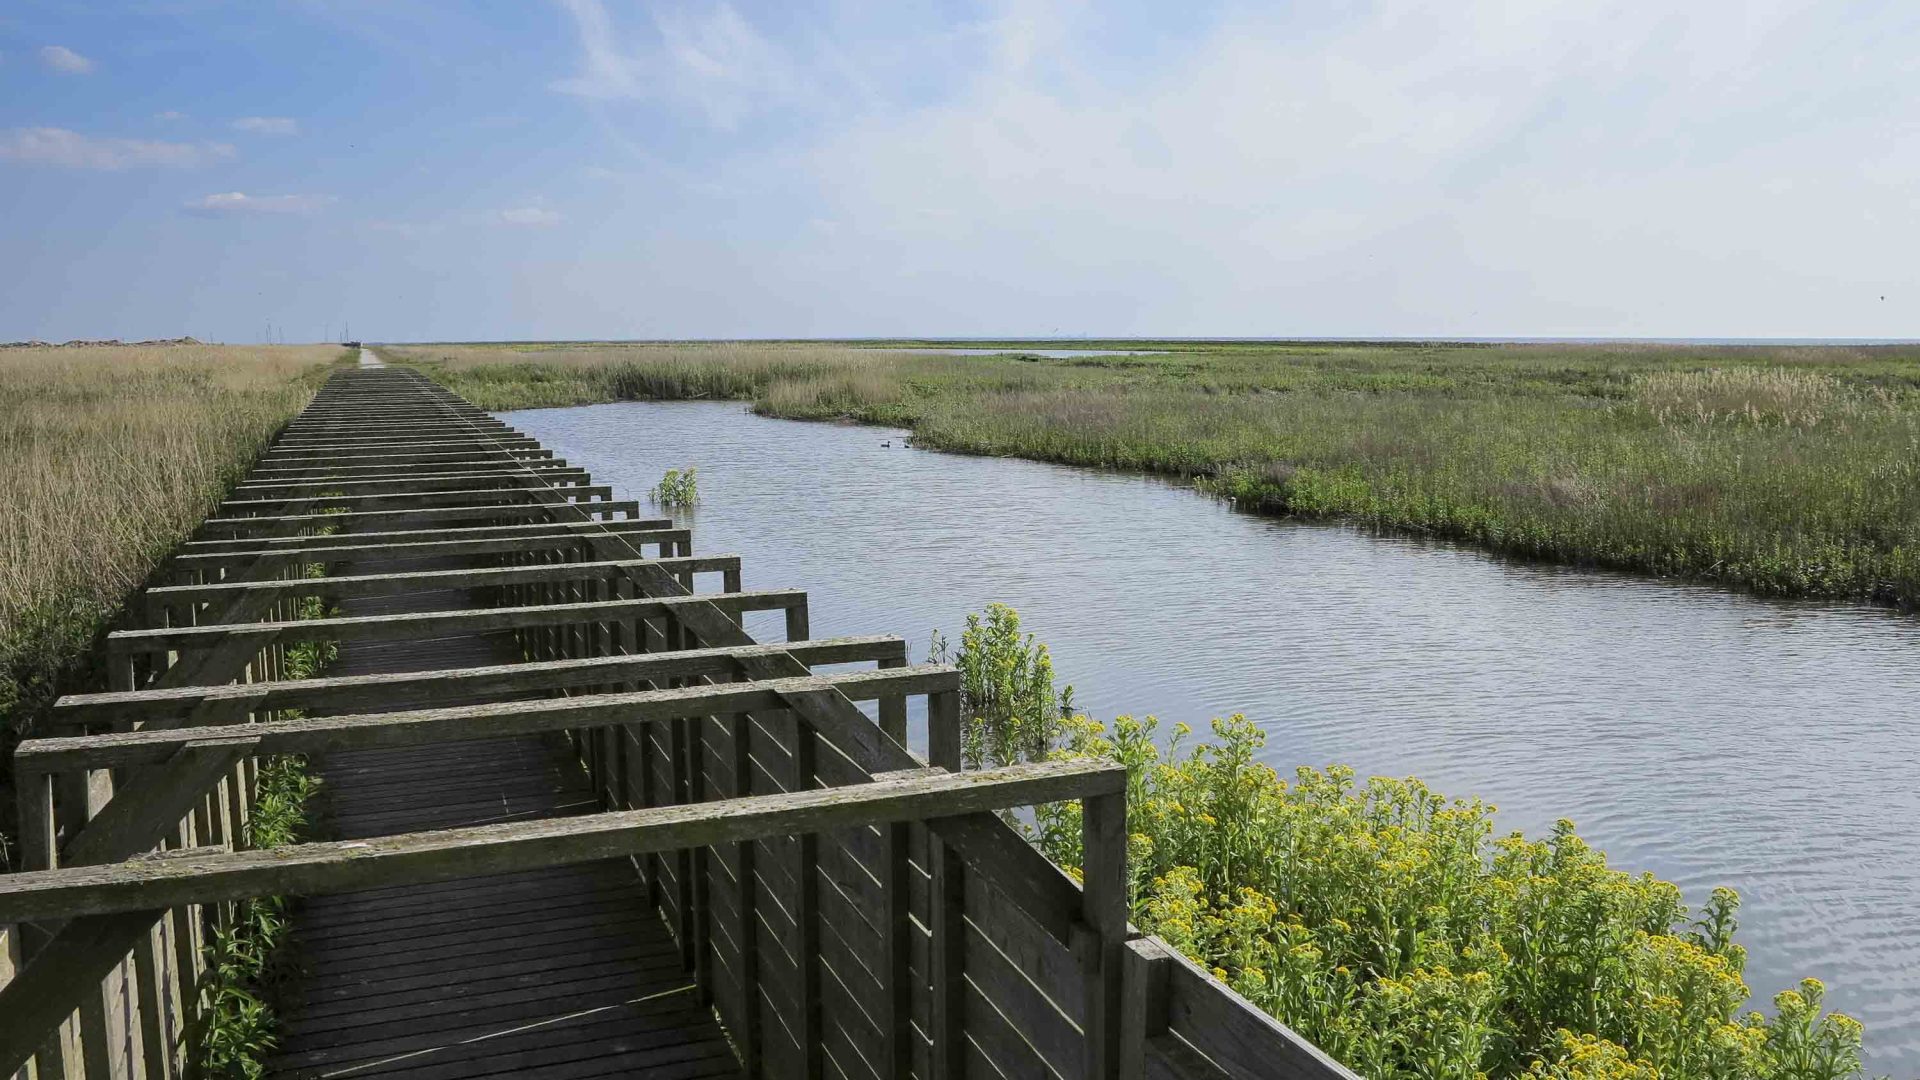 A wooden walkway alongside wetlands.